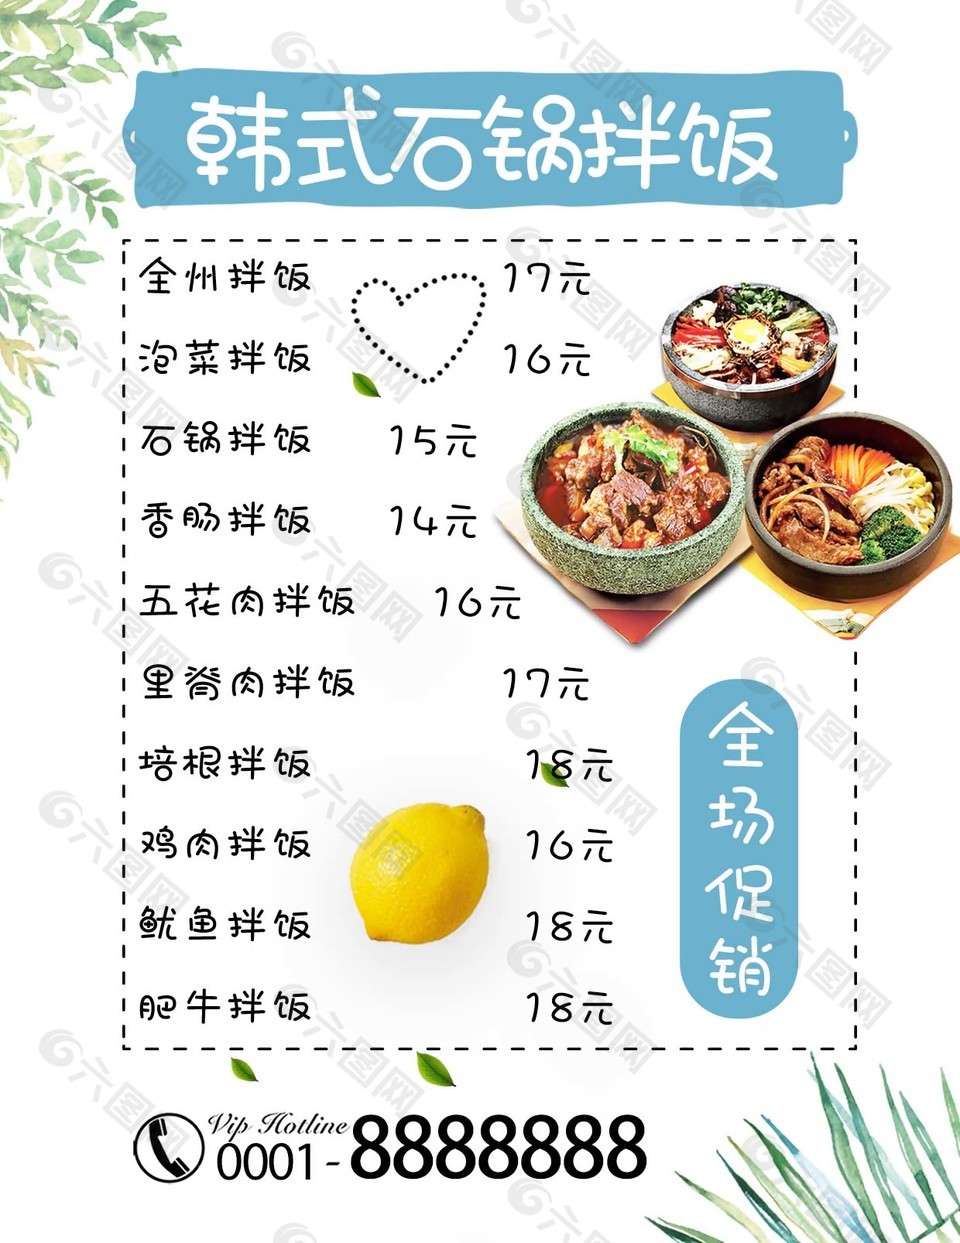 韓式石鍋拌飯特色菜單模板下載